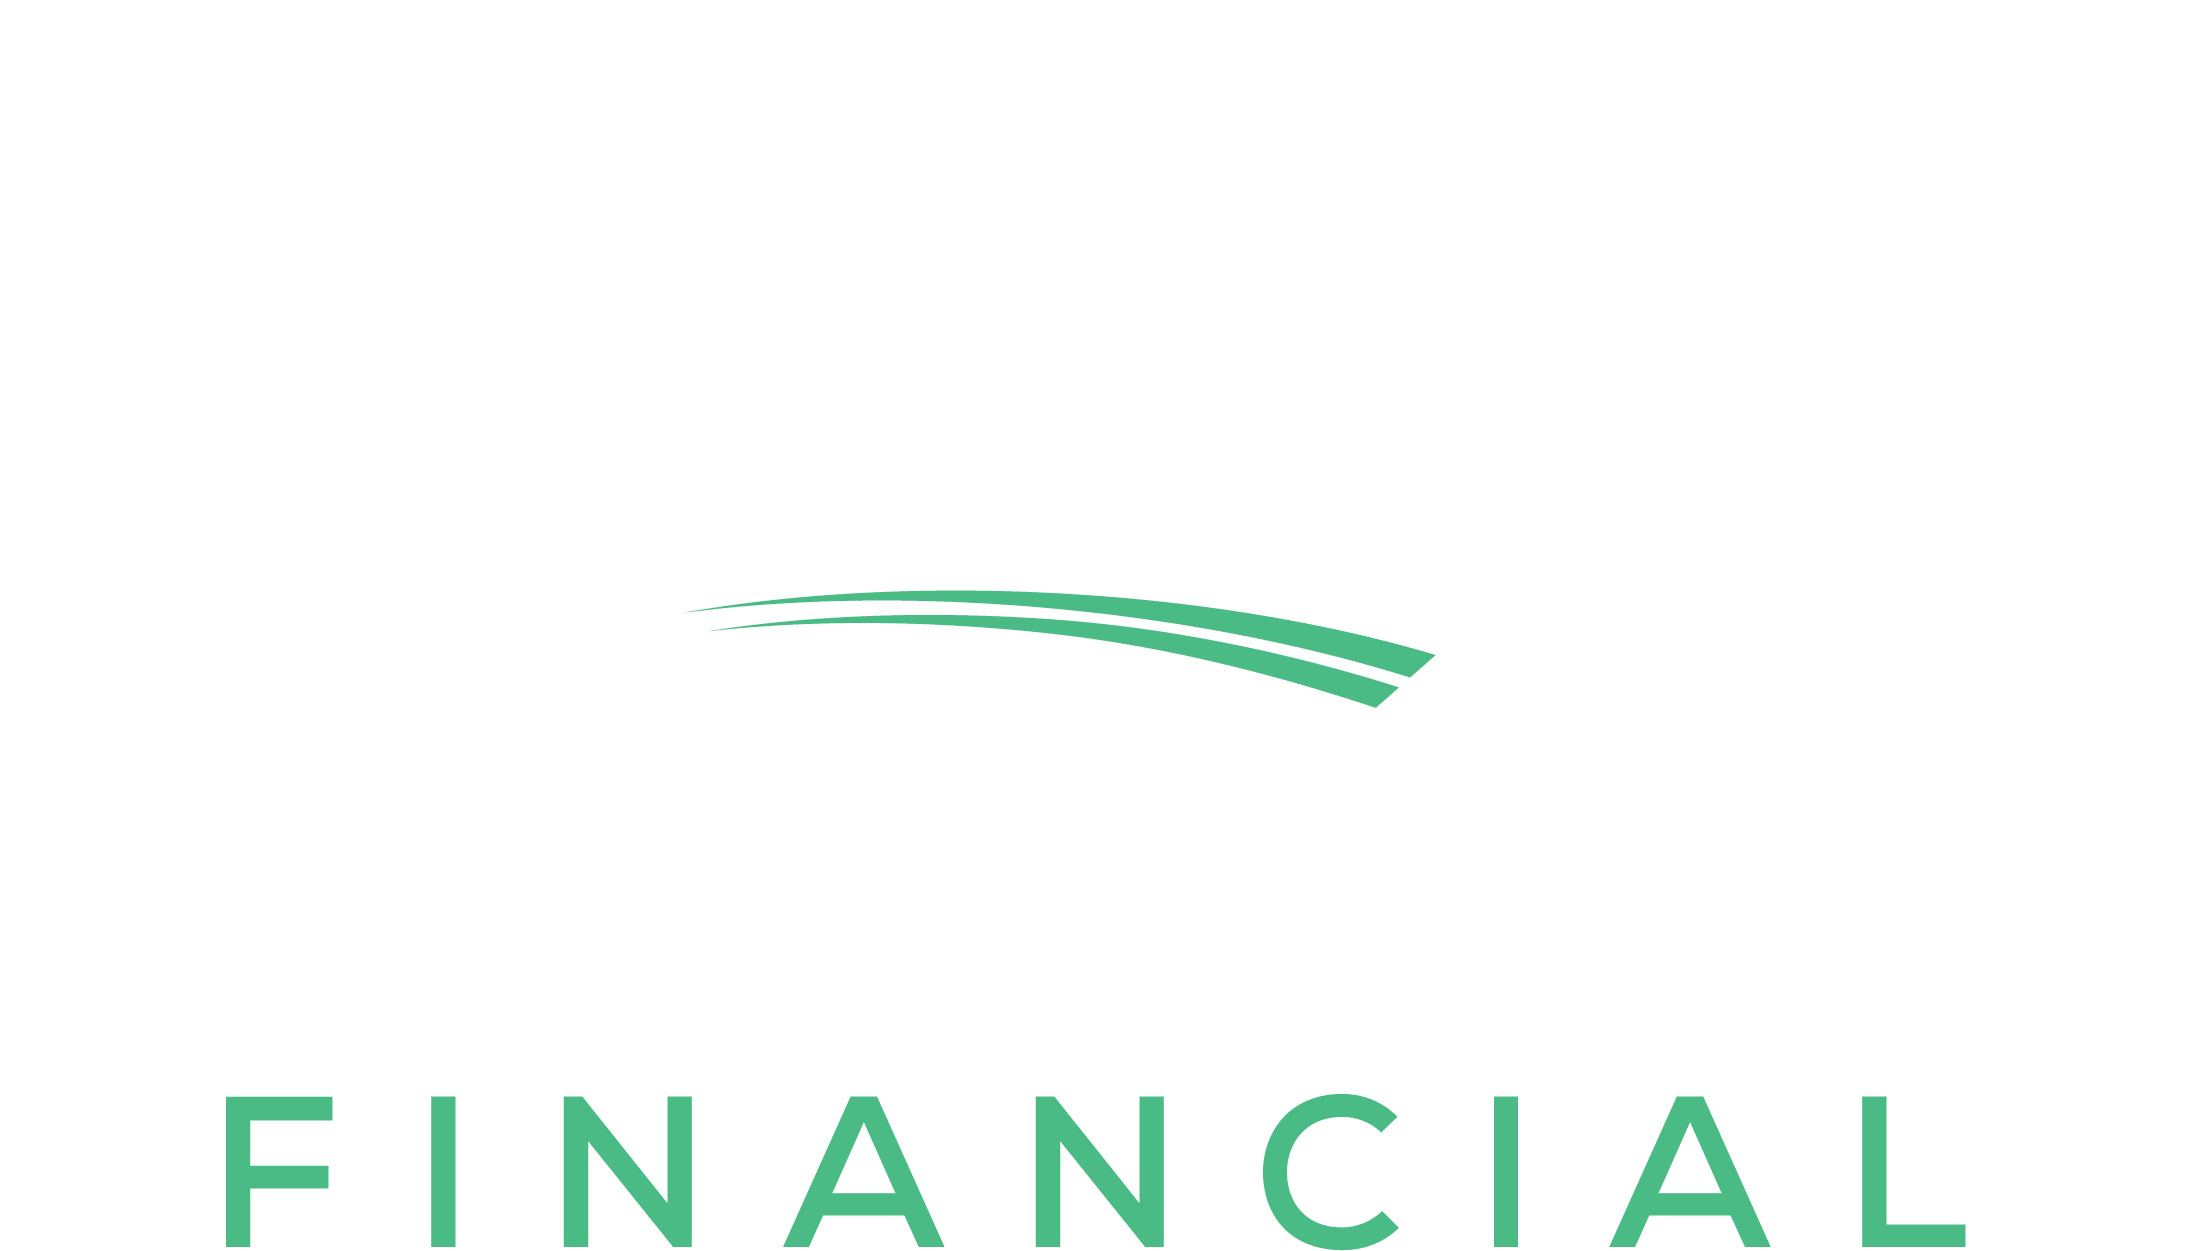 assurance financial logo